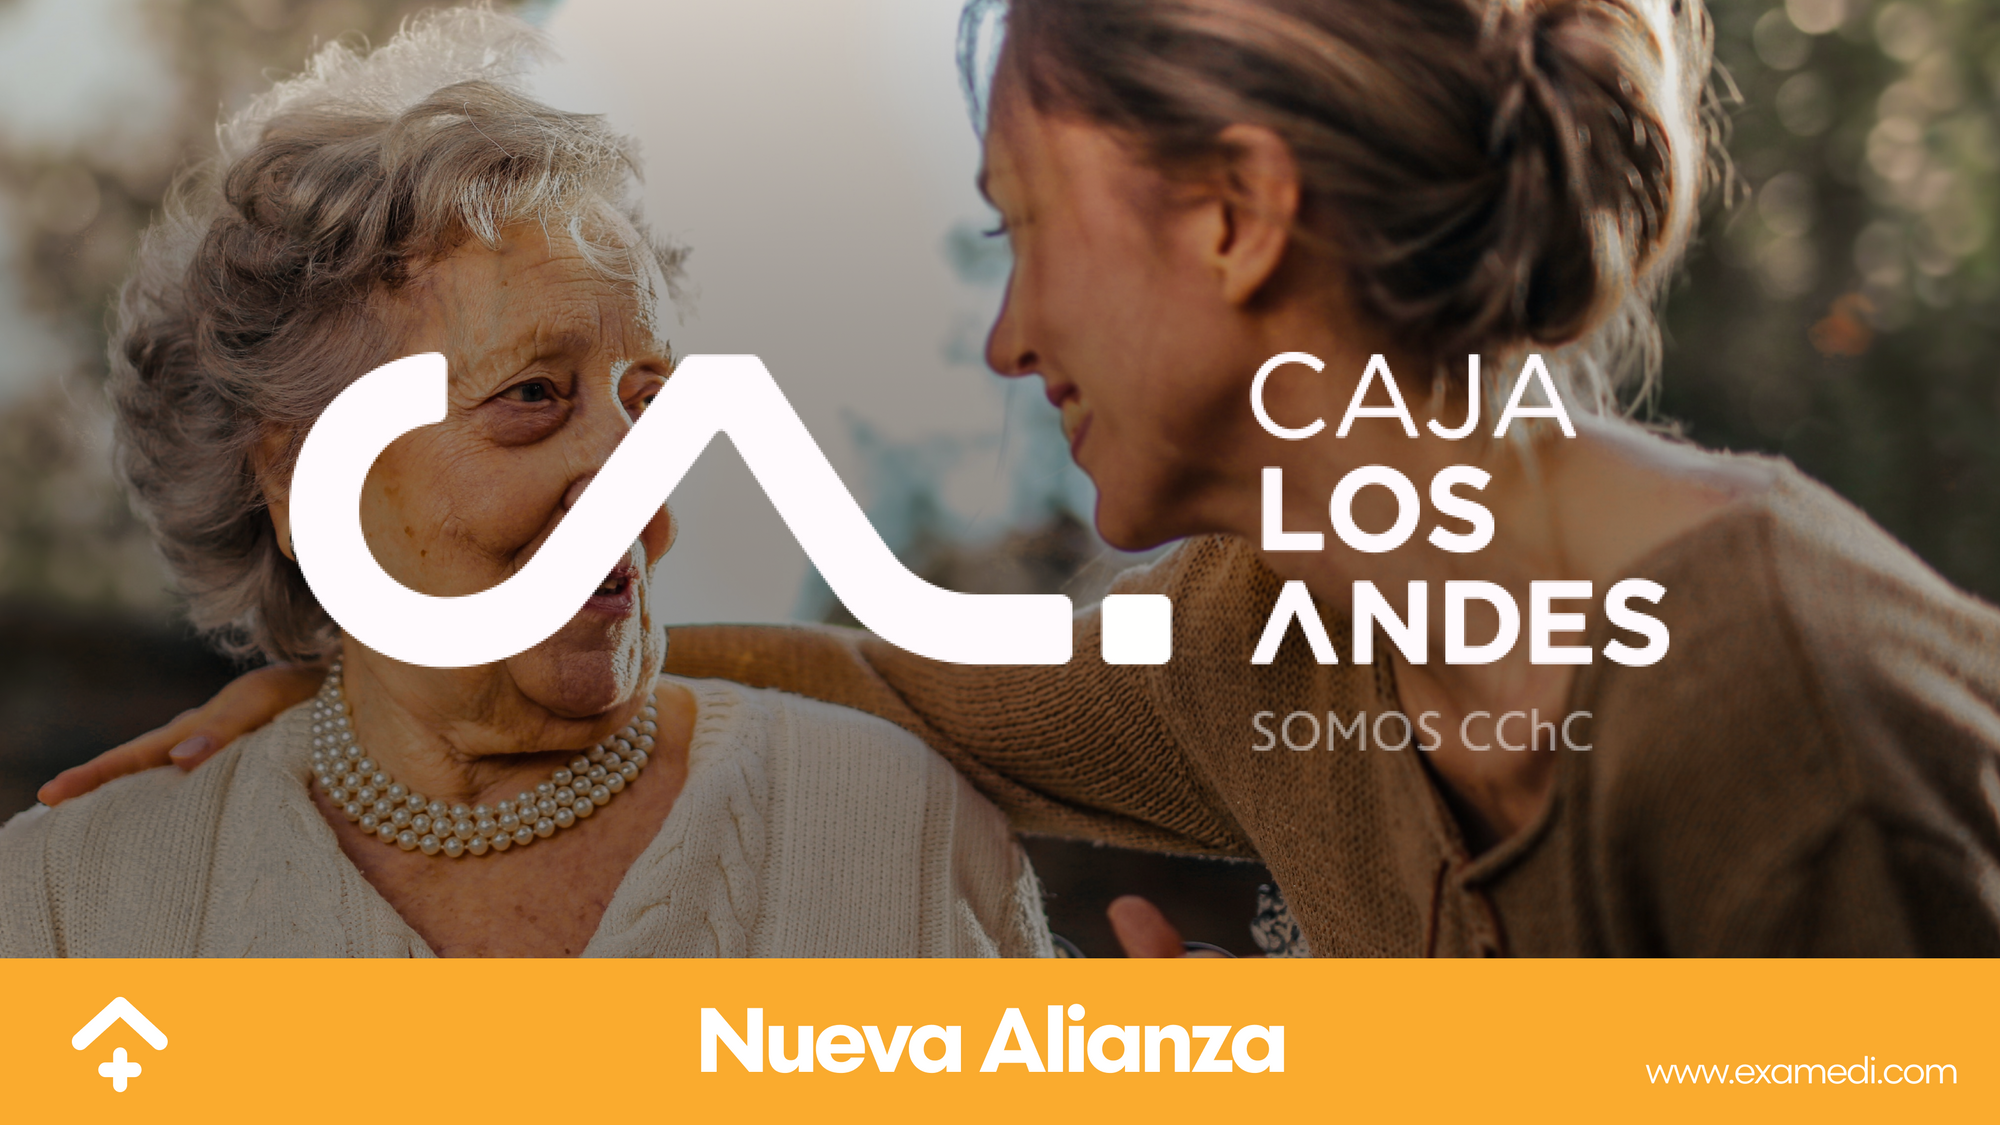 Examedi 🤝 Caja Los Andes = 4 millones de pacientes felices